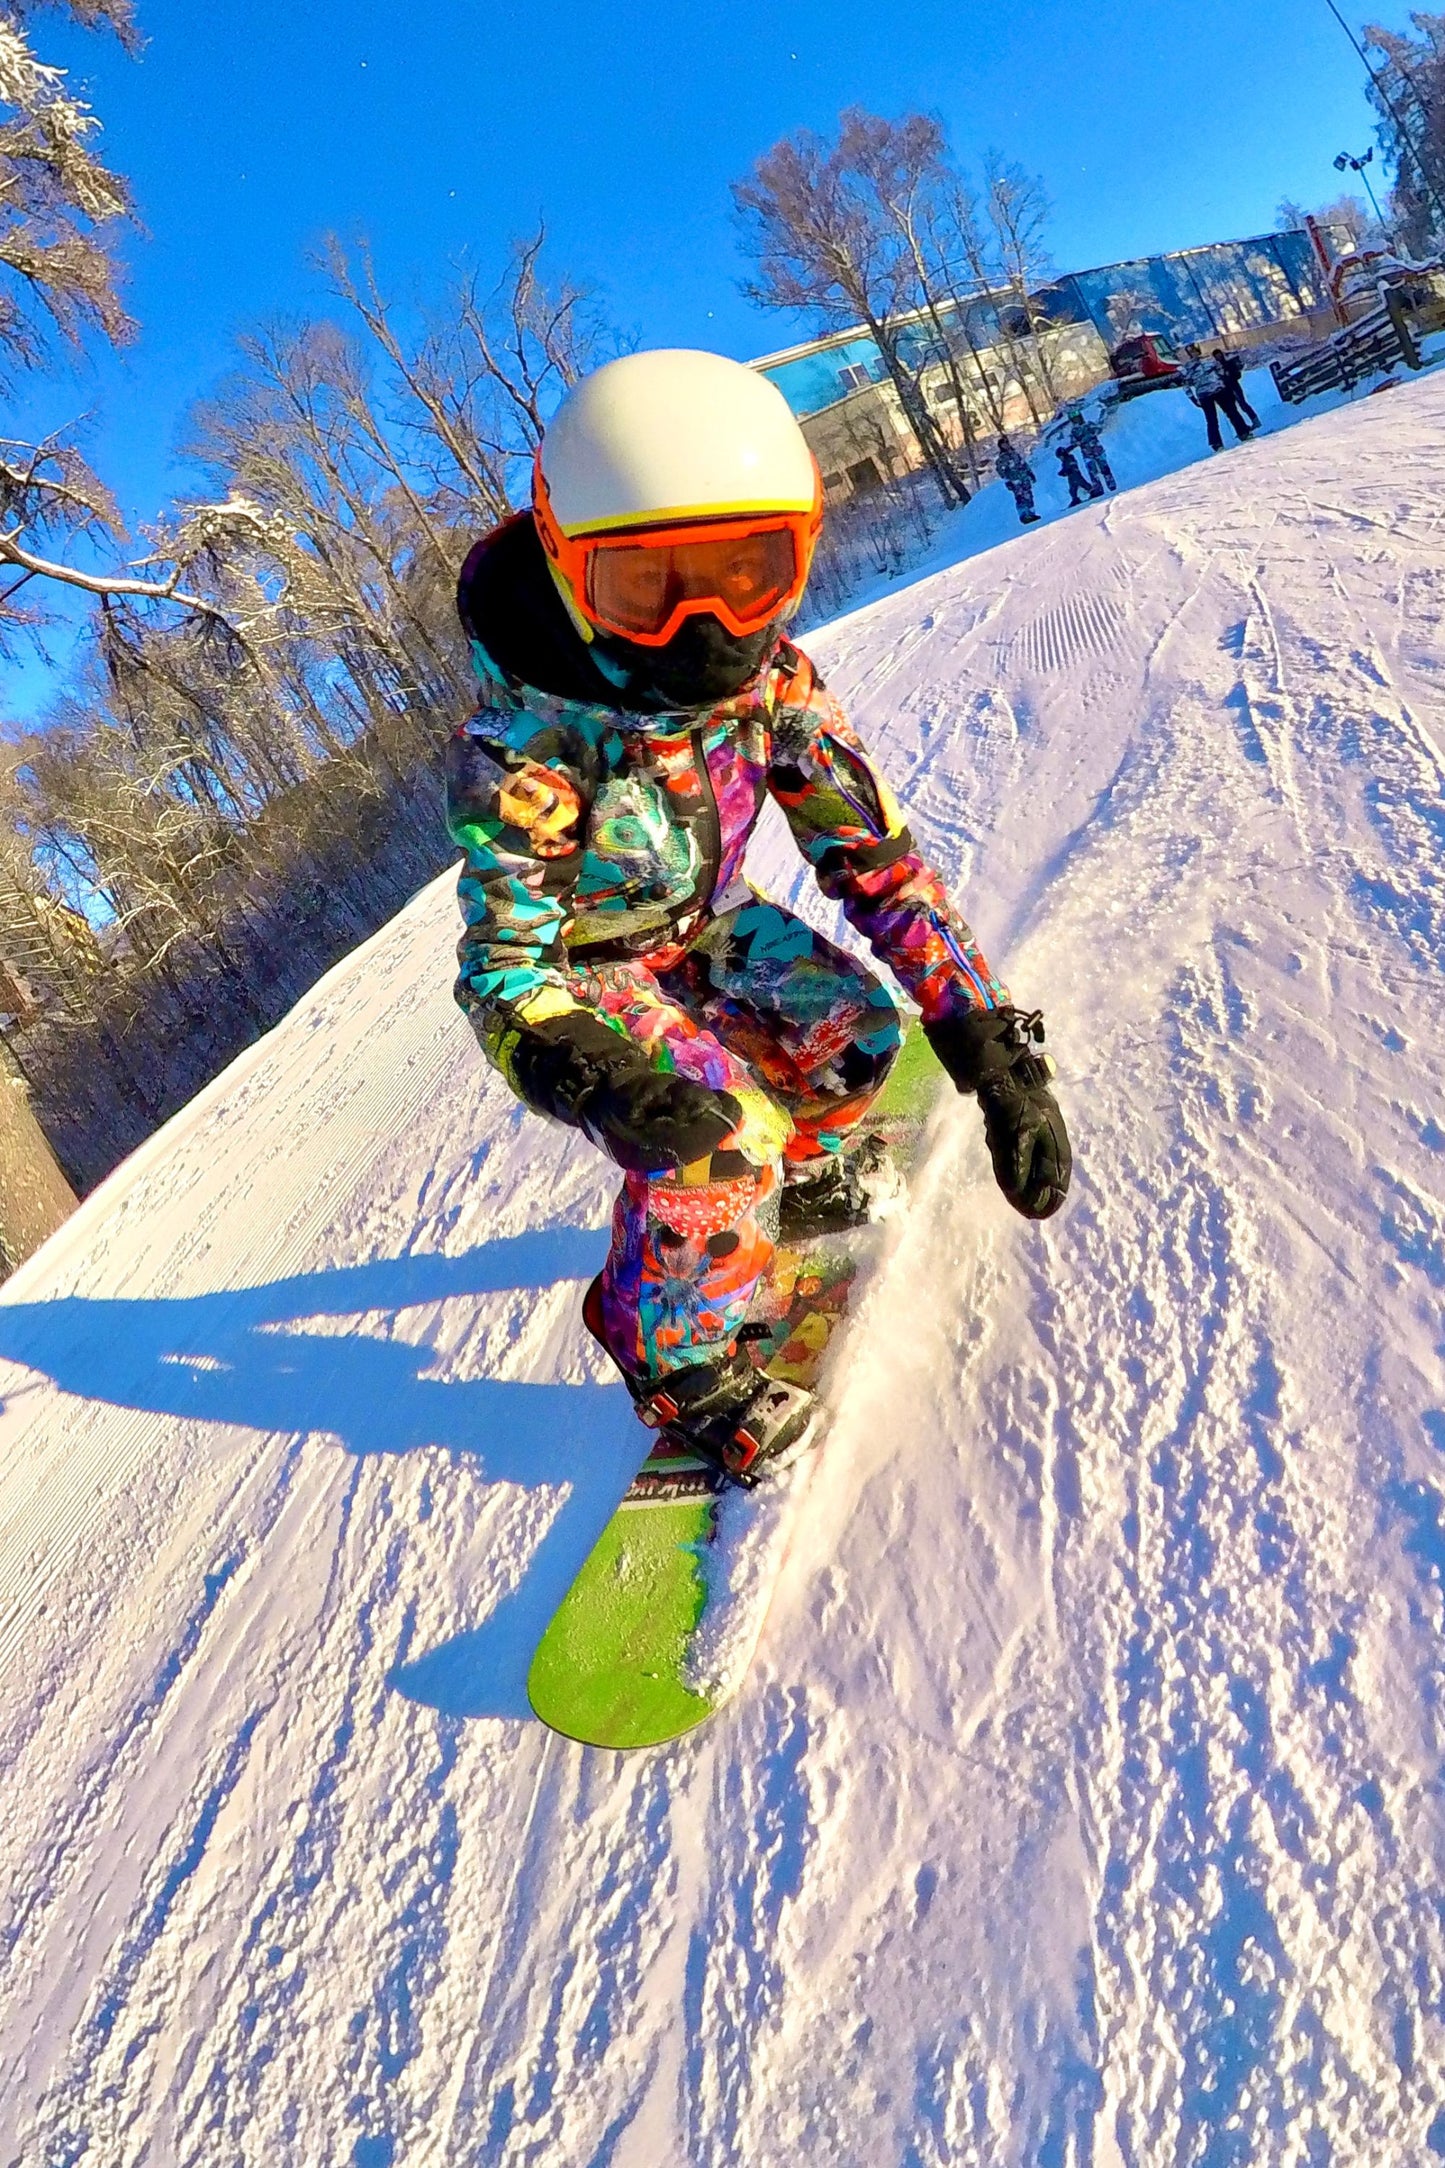 Bērnu ziemas slēpošanas/snovborda kombinezons raibās krāsās